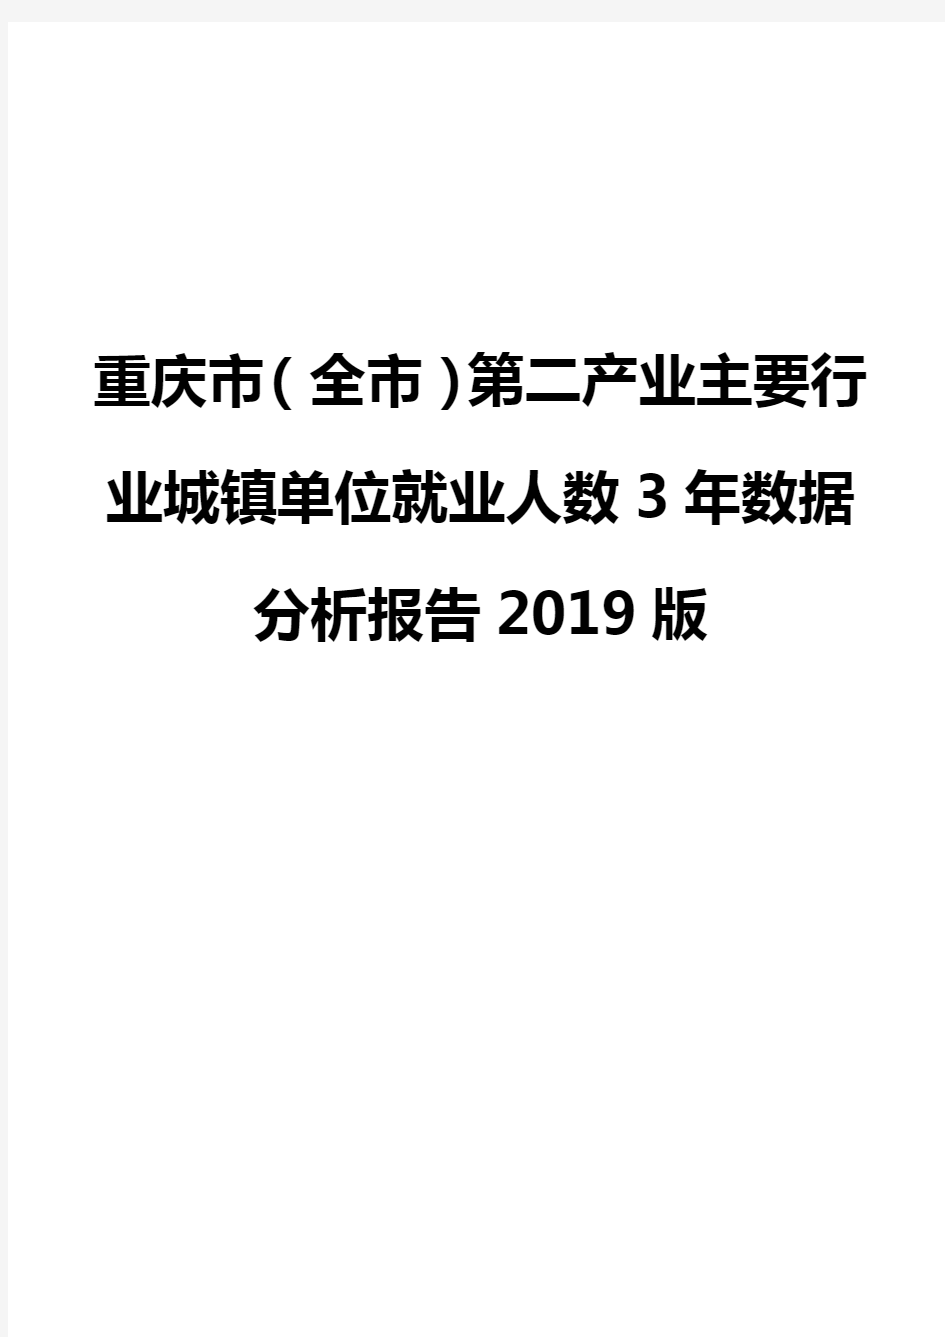 重庆市(全市)第二产业主要行业城镇单位就业人数3年数据分析报告2019版